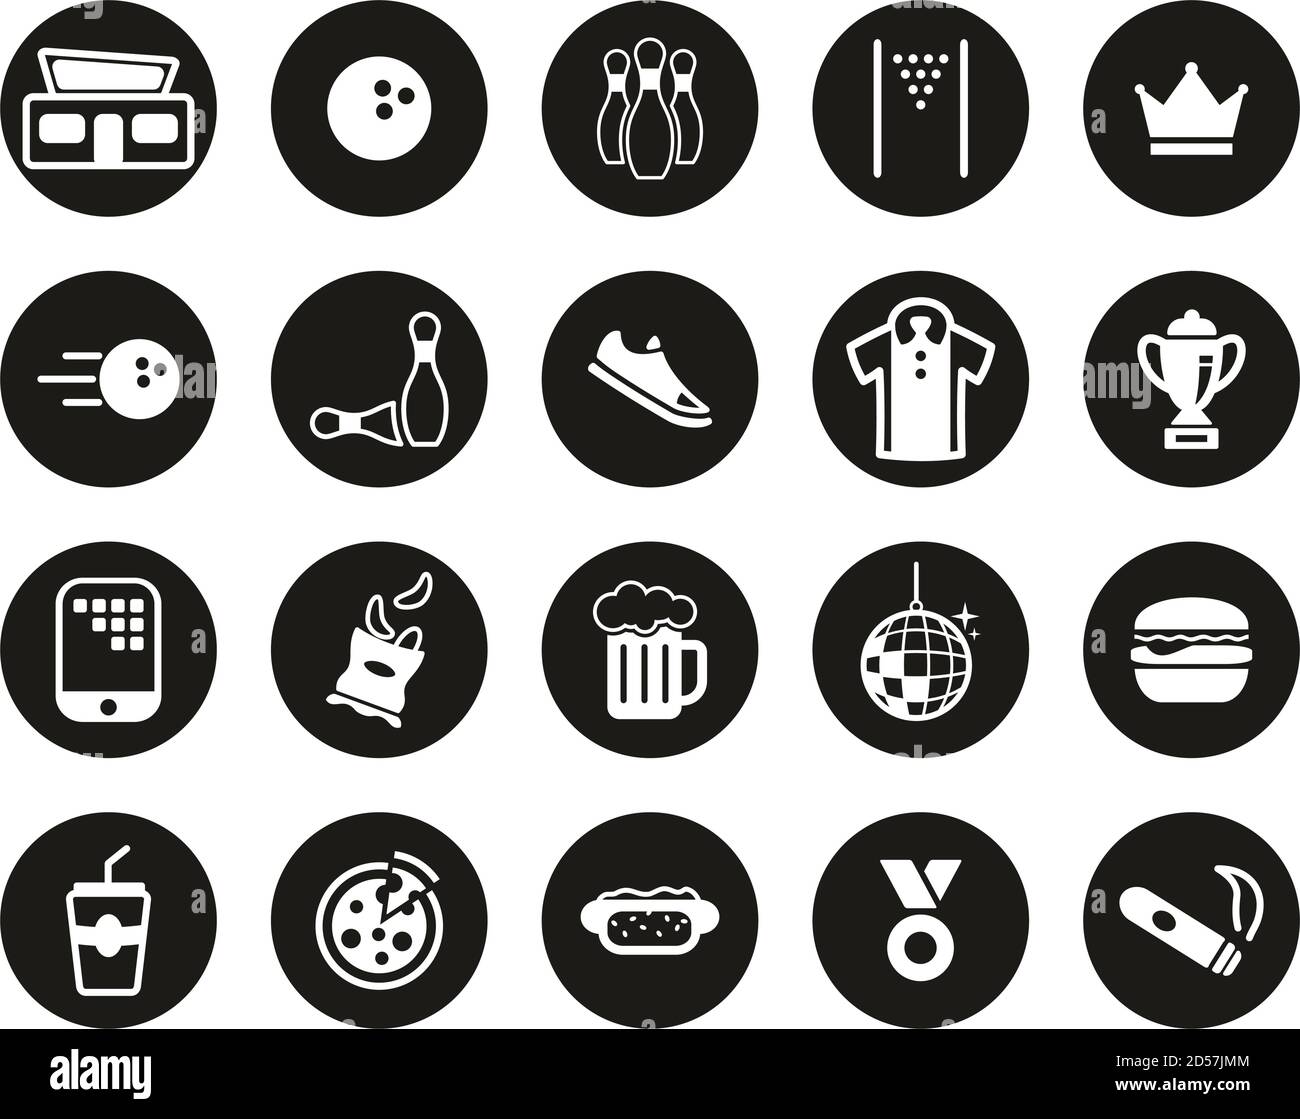 Bowling Oder Bowling Alley Icons Weiß Auf Schwarz Flat Design Kreis Groß Stock Vektor